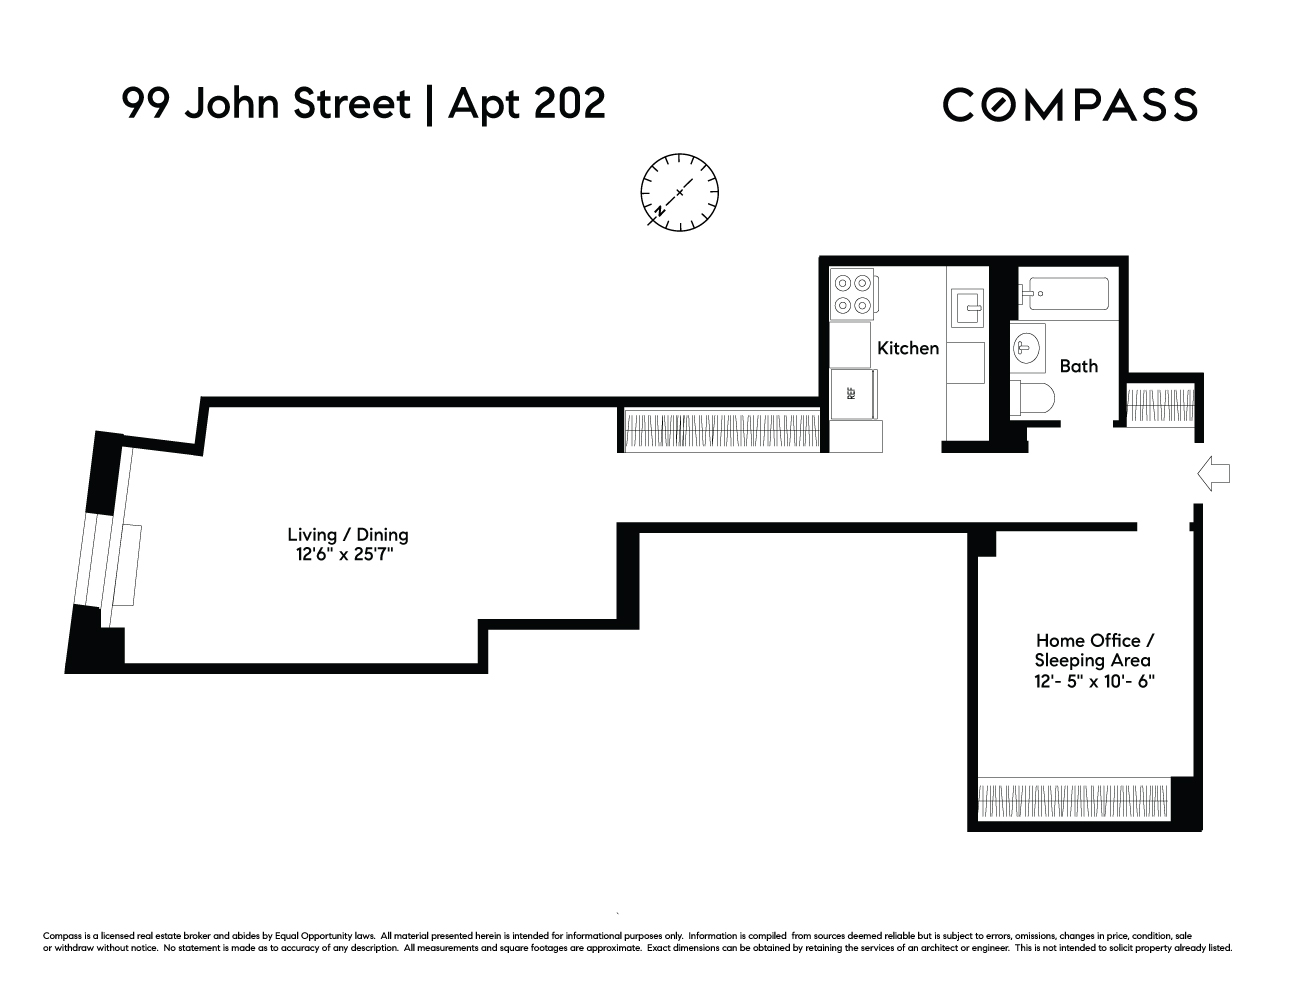 Floorplan for 99 John Street, 202